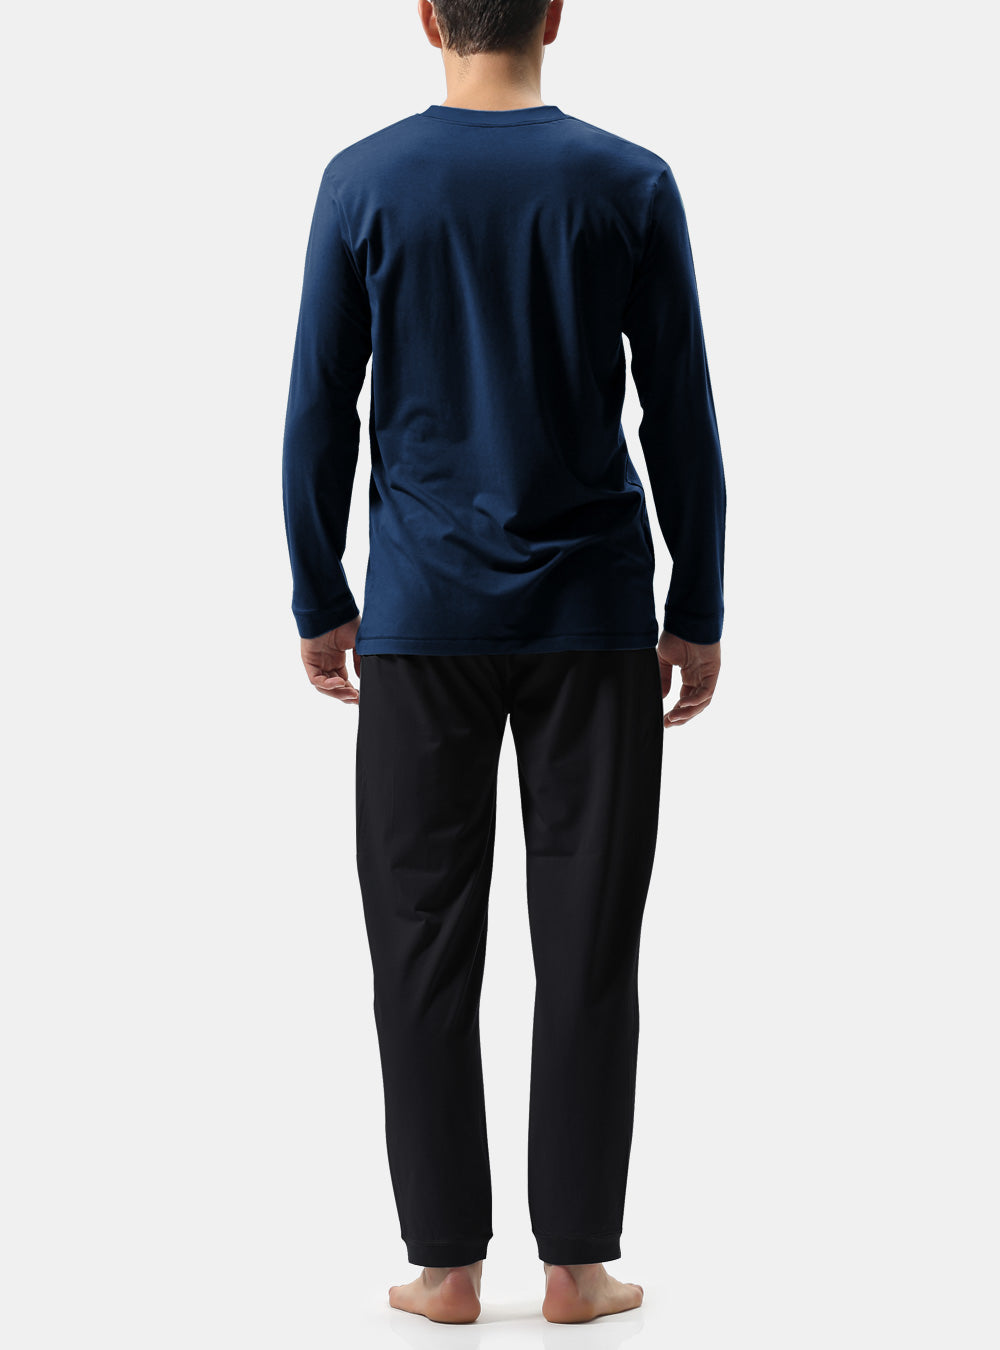 David Archy® Men's Pajamas Set V-Neck Lounge Wear No Fly